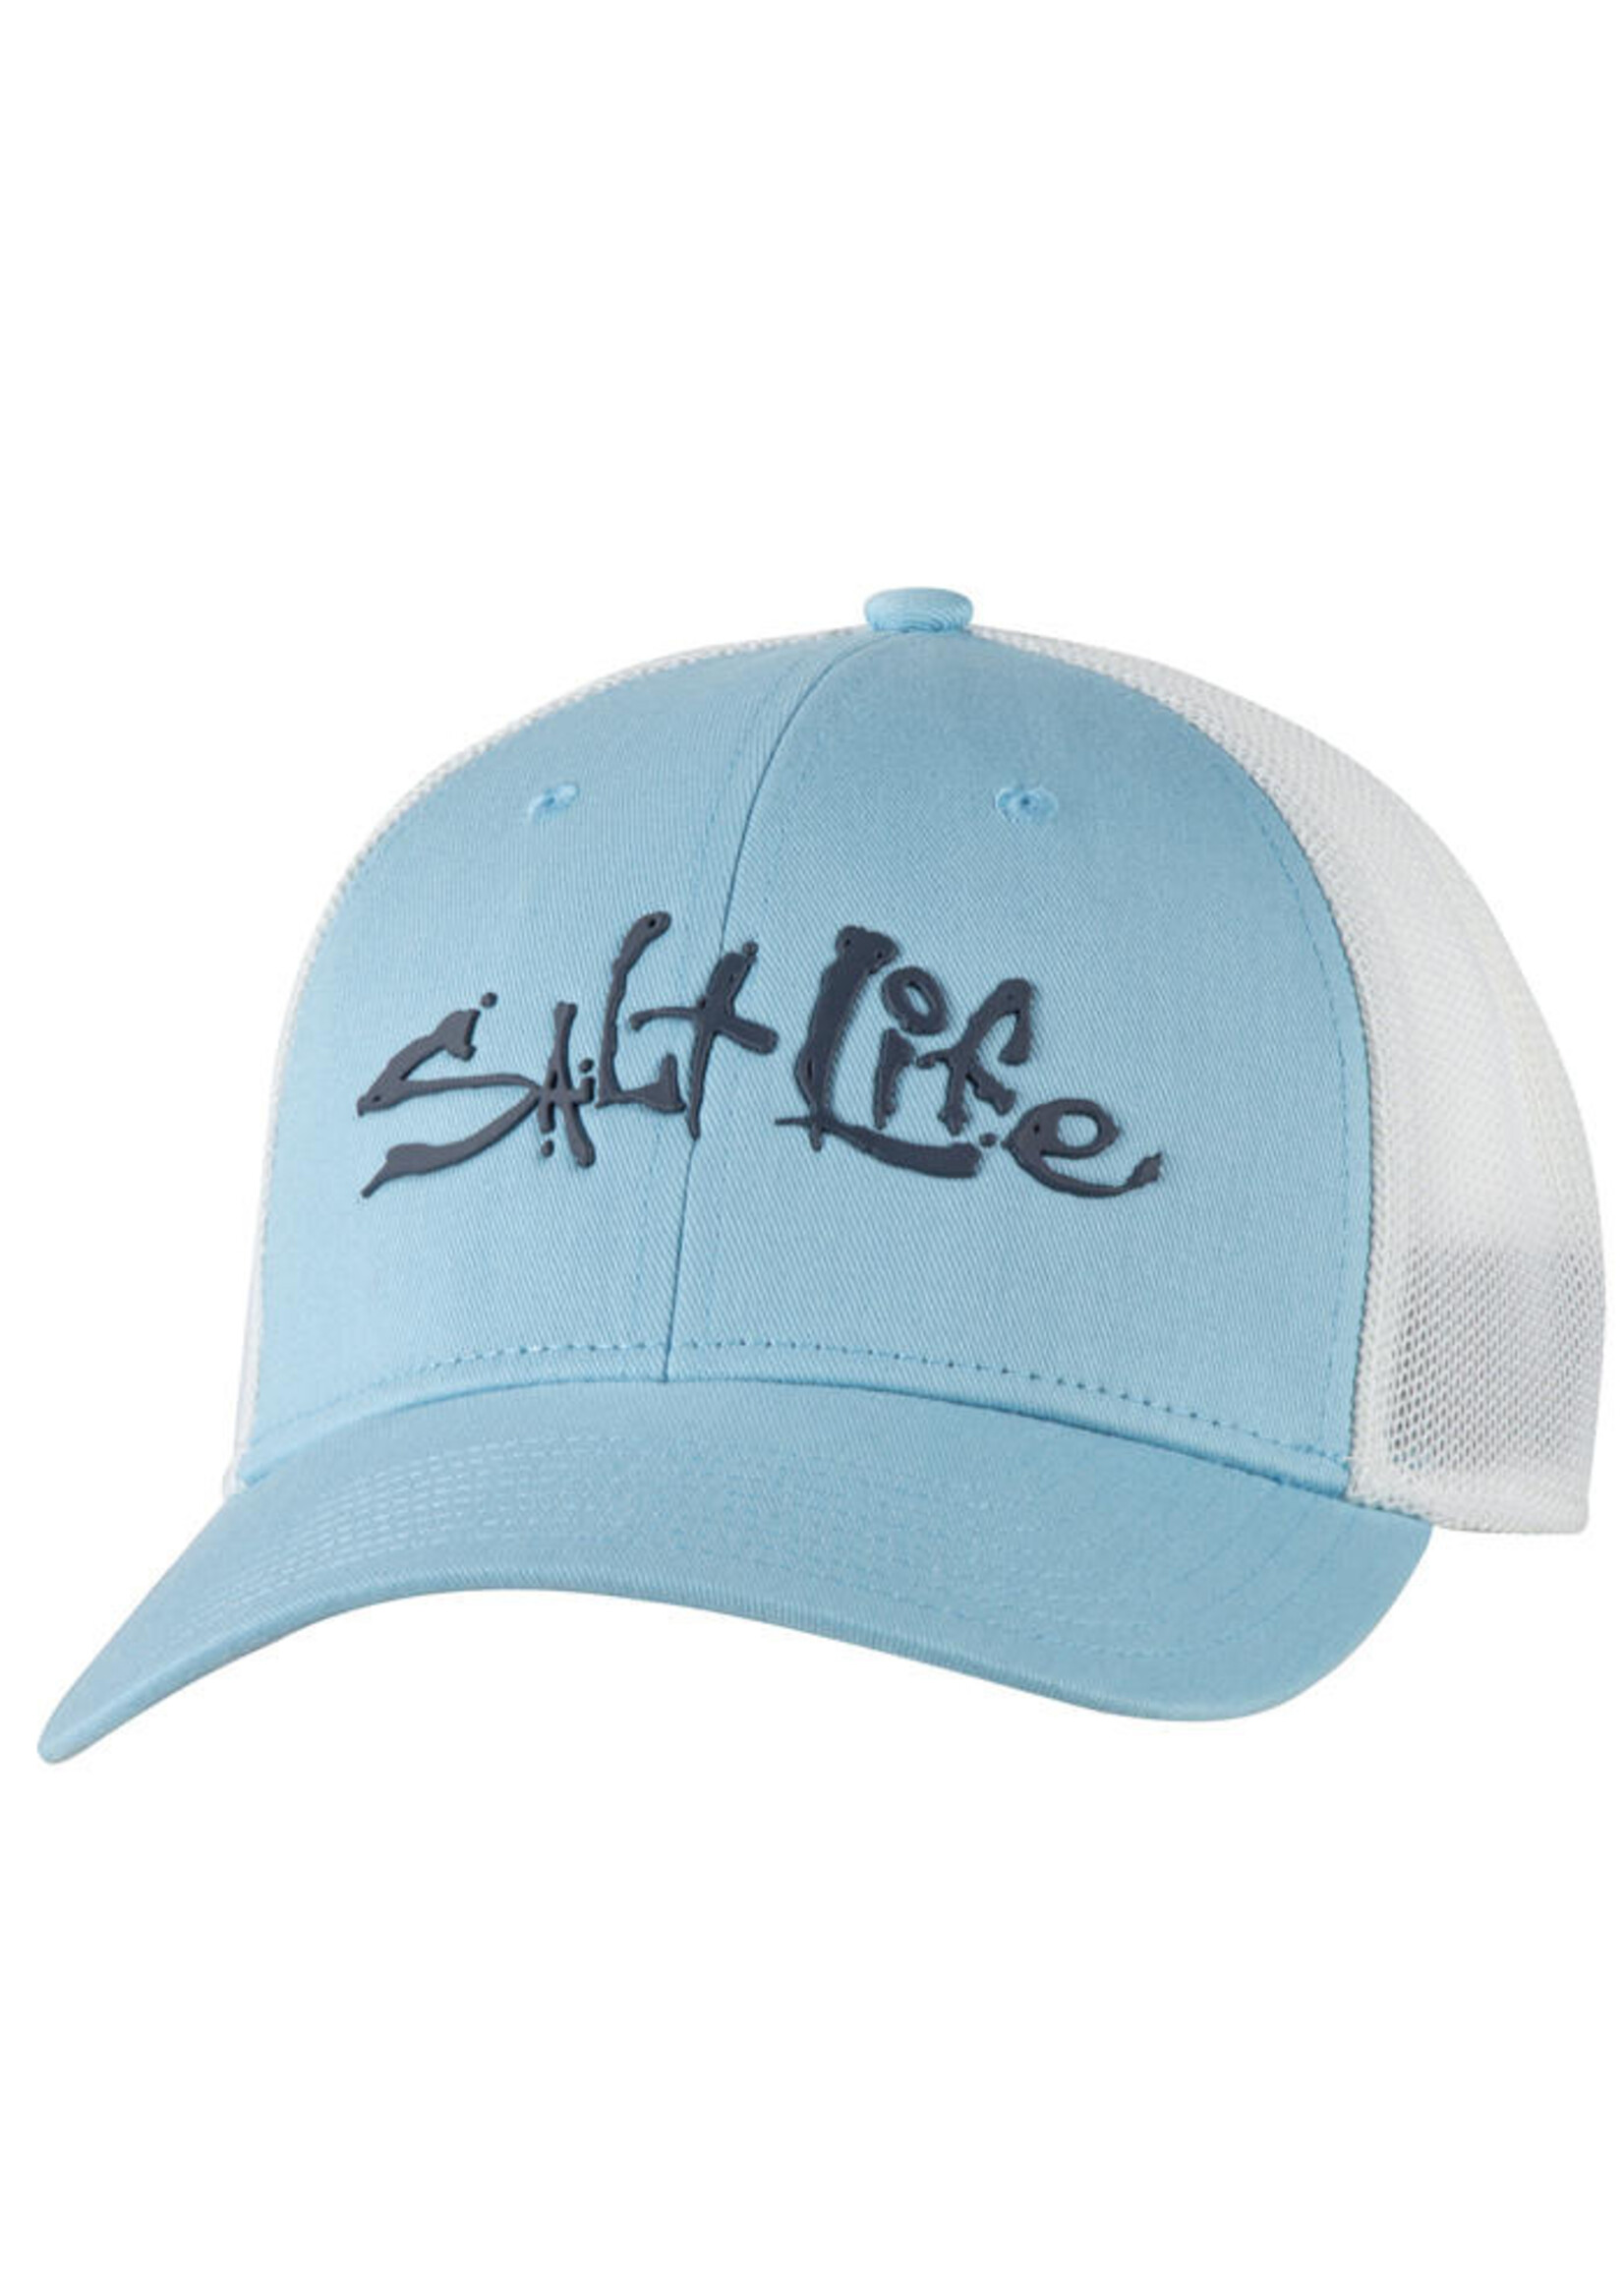 Salt Life Fish Dive Surf Stretch Fit Hat